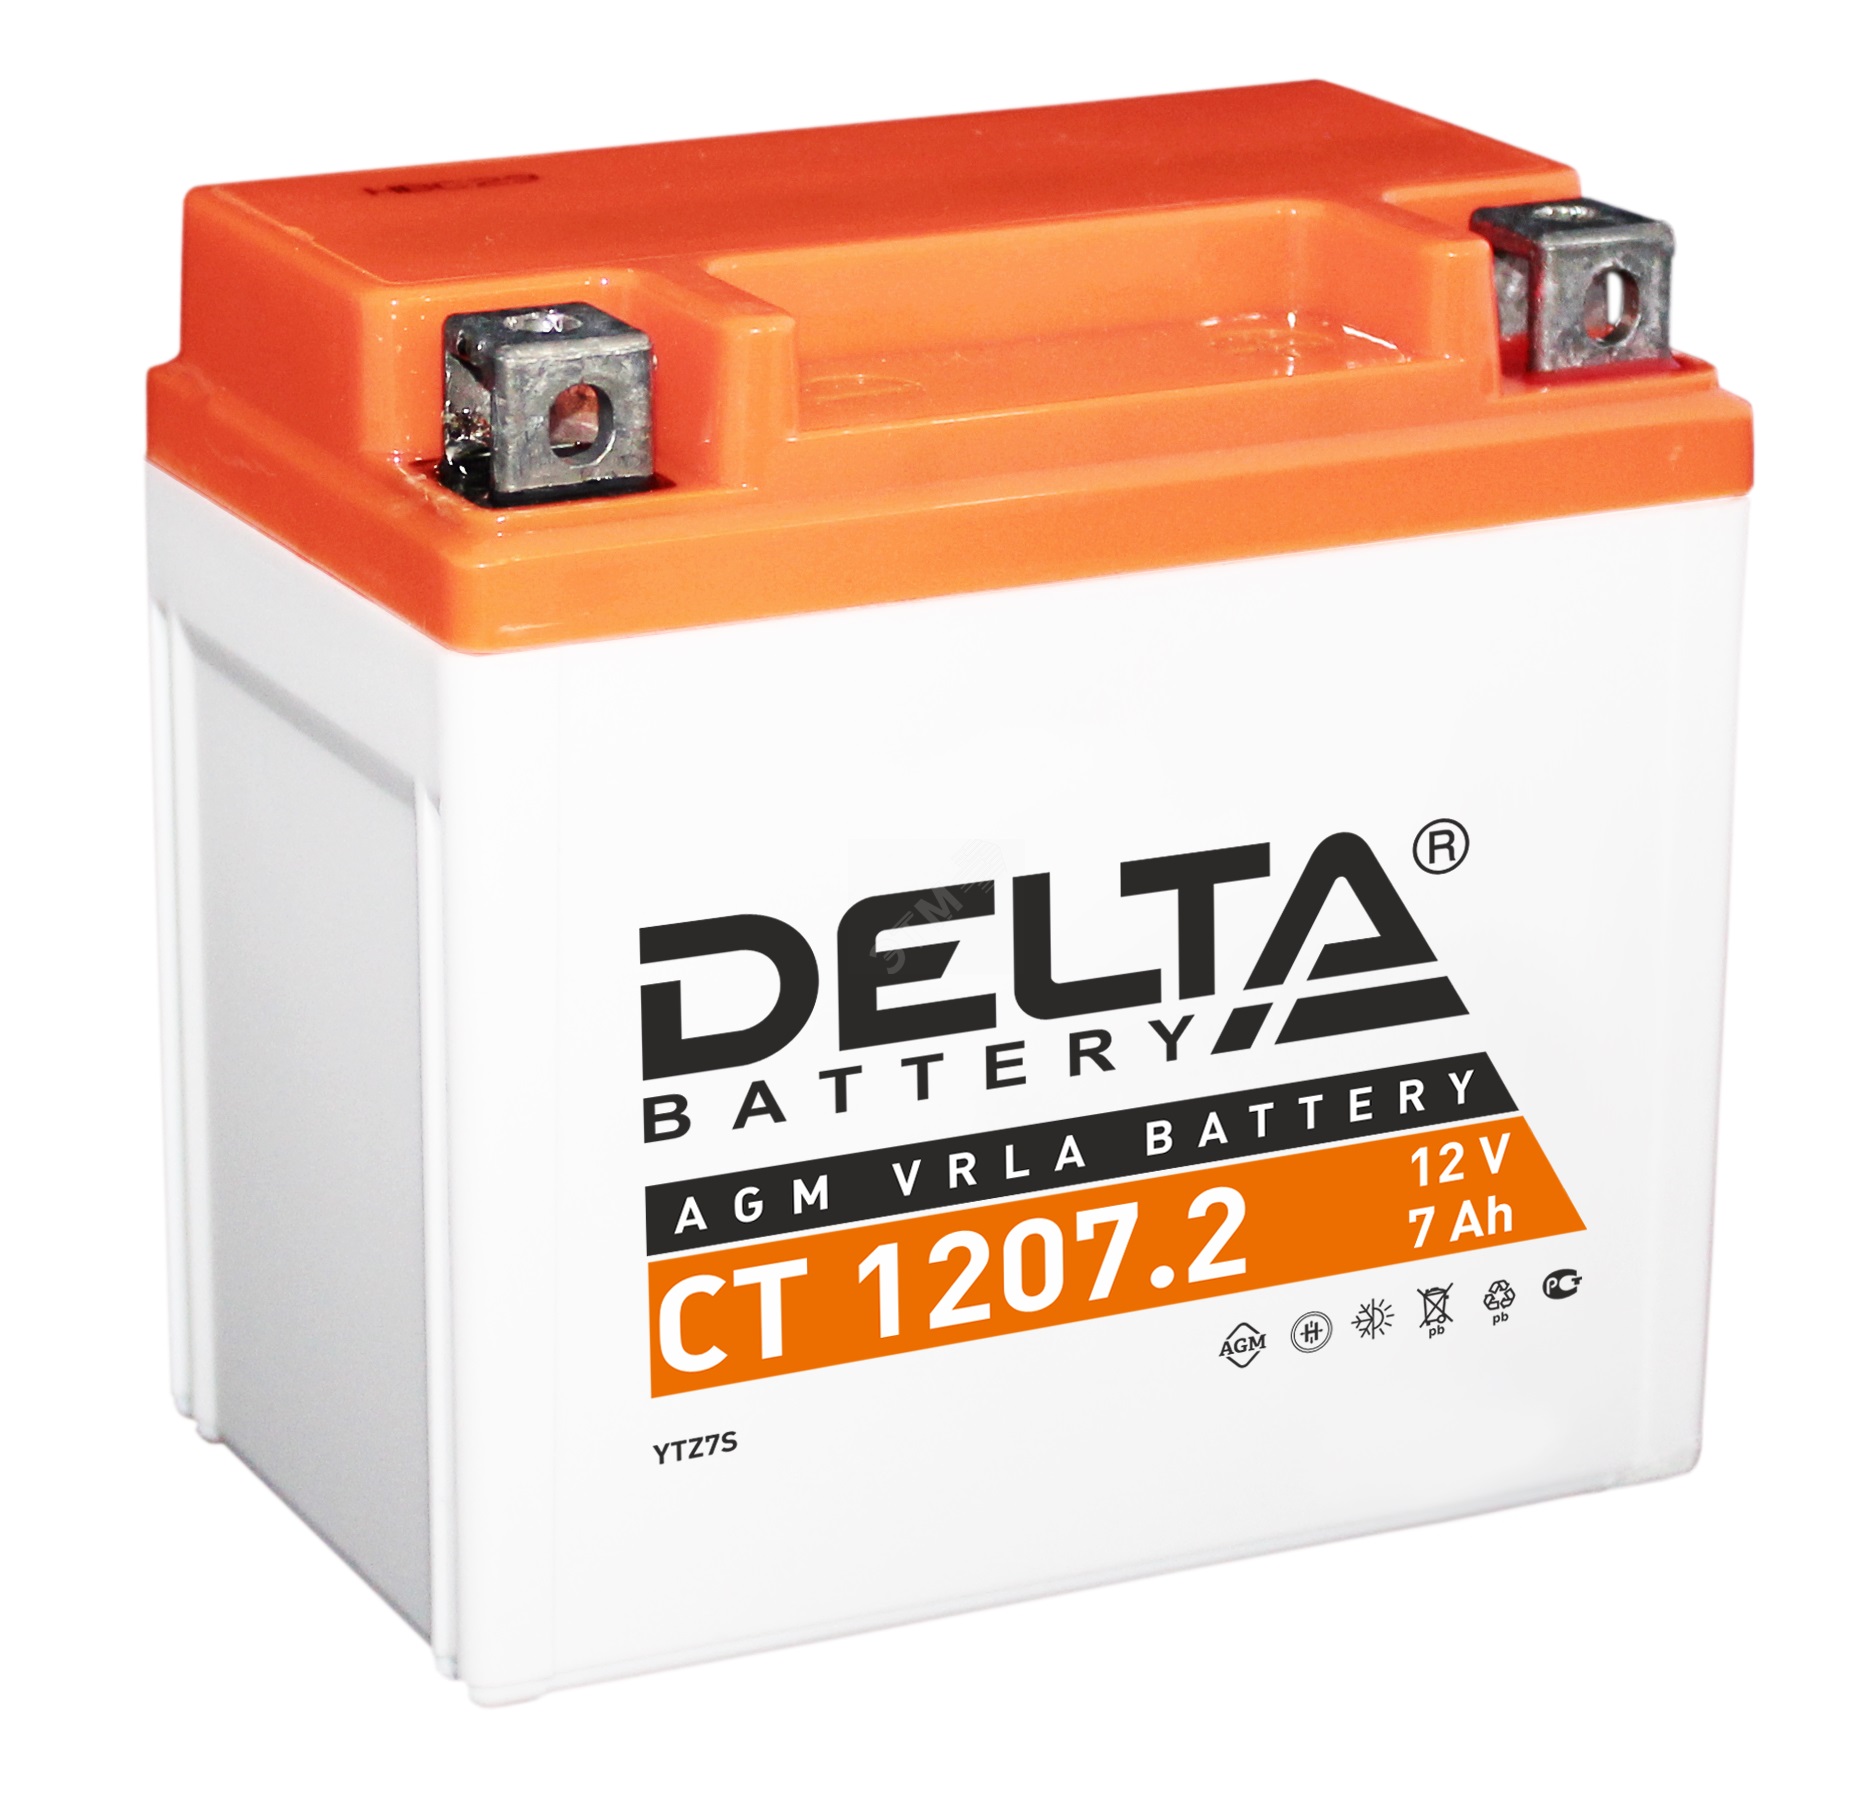 Мотоаккумулятор стартерный Delta CT 1207.2 12V 7Ah (YTZ7S) - отзывы покупателей на Мегамаркет